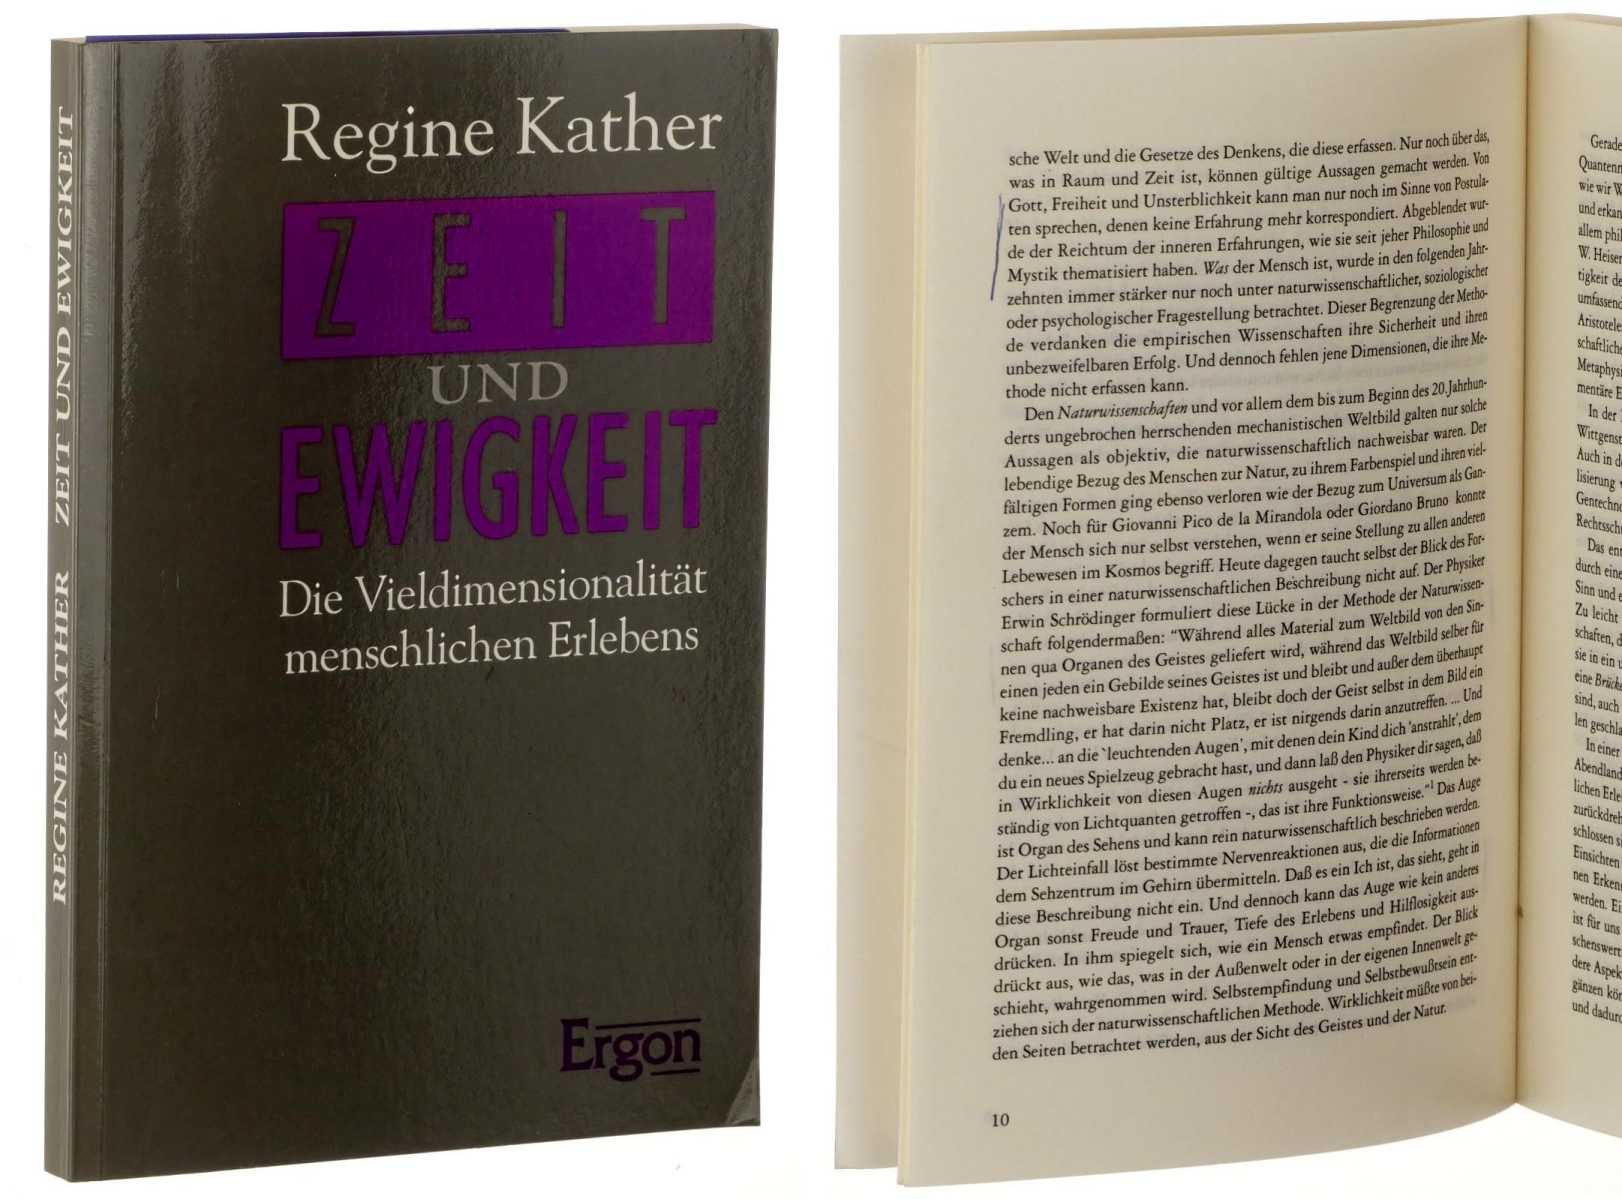 Kather, Regine:  Zeit und Ewigkeit. über die Vieldimensionalität menschlichen Erlebens. 